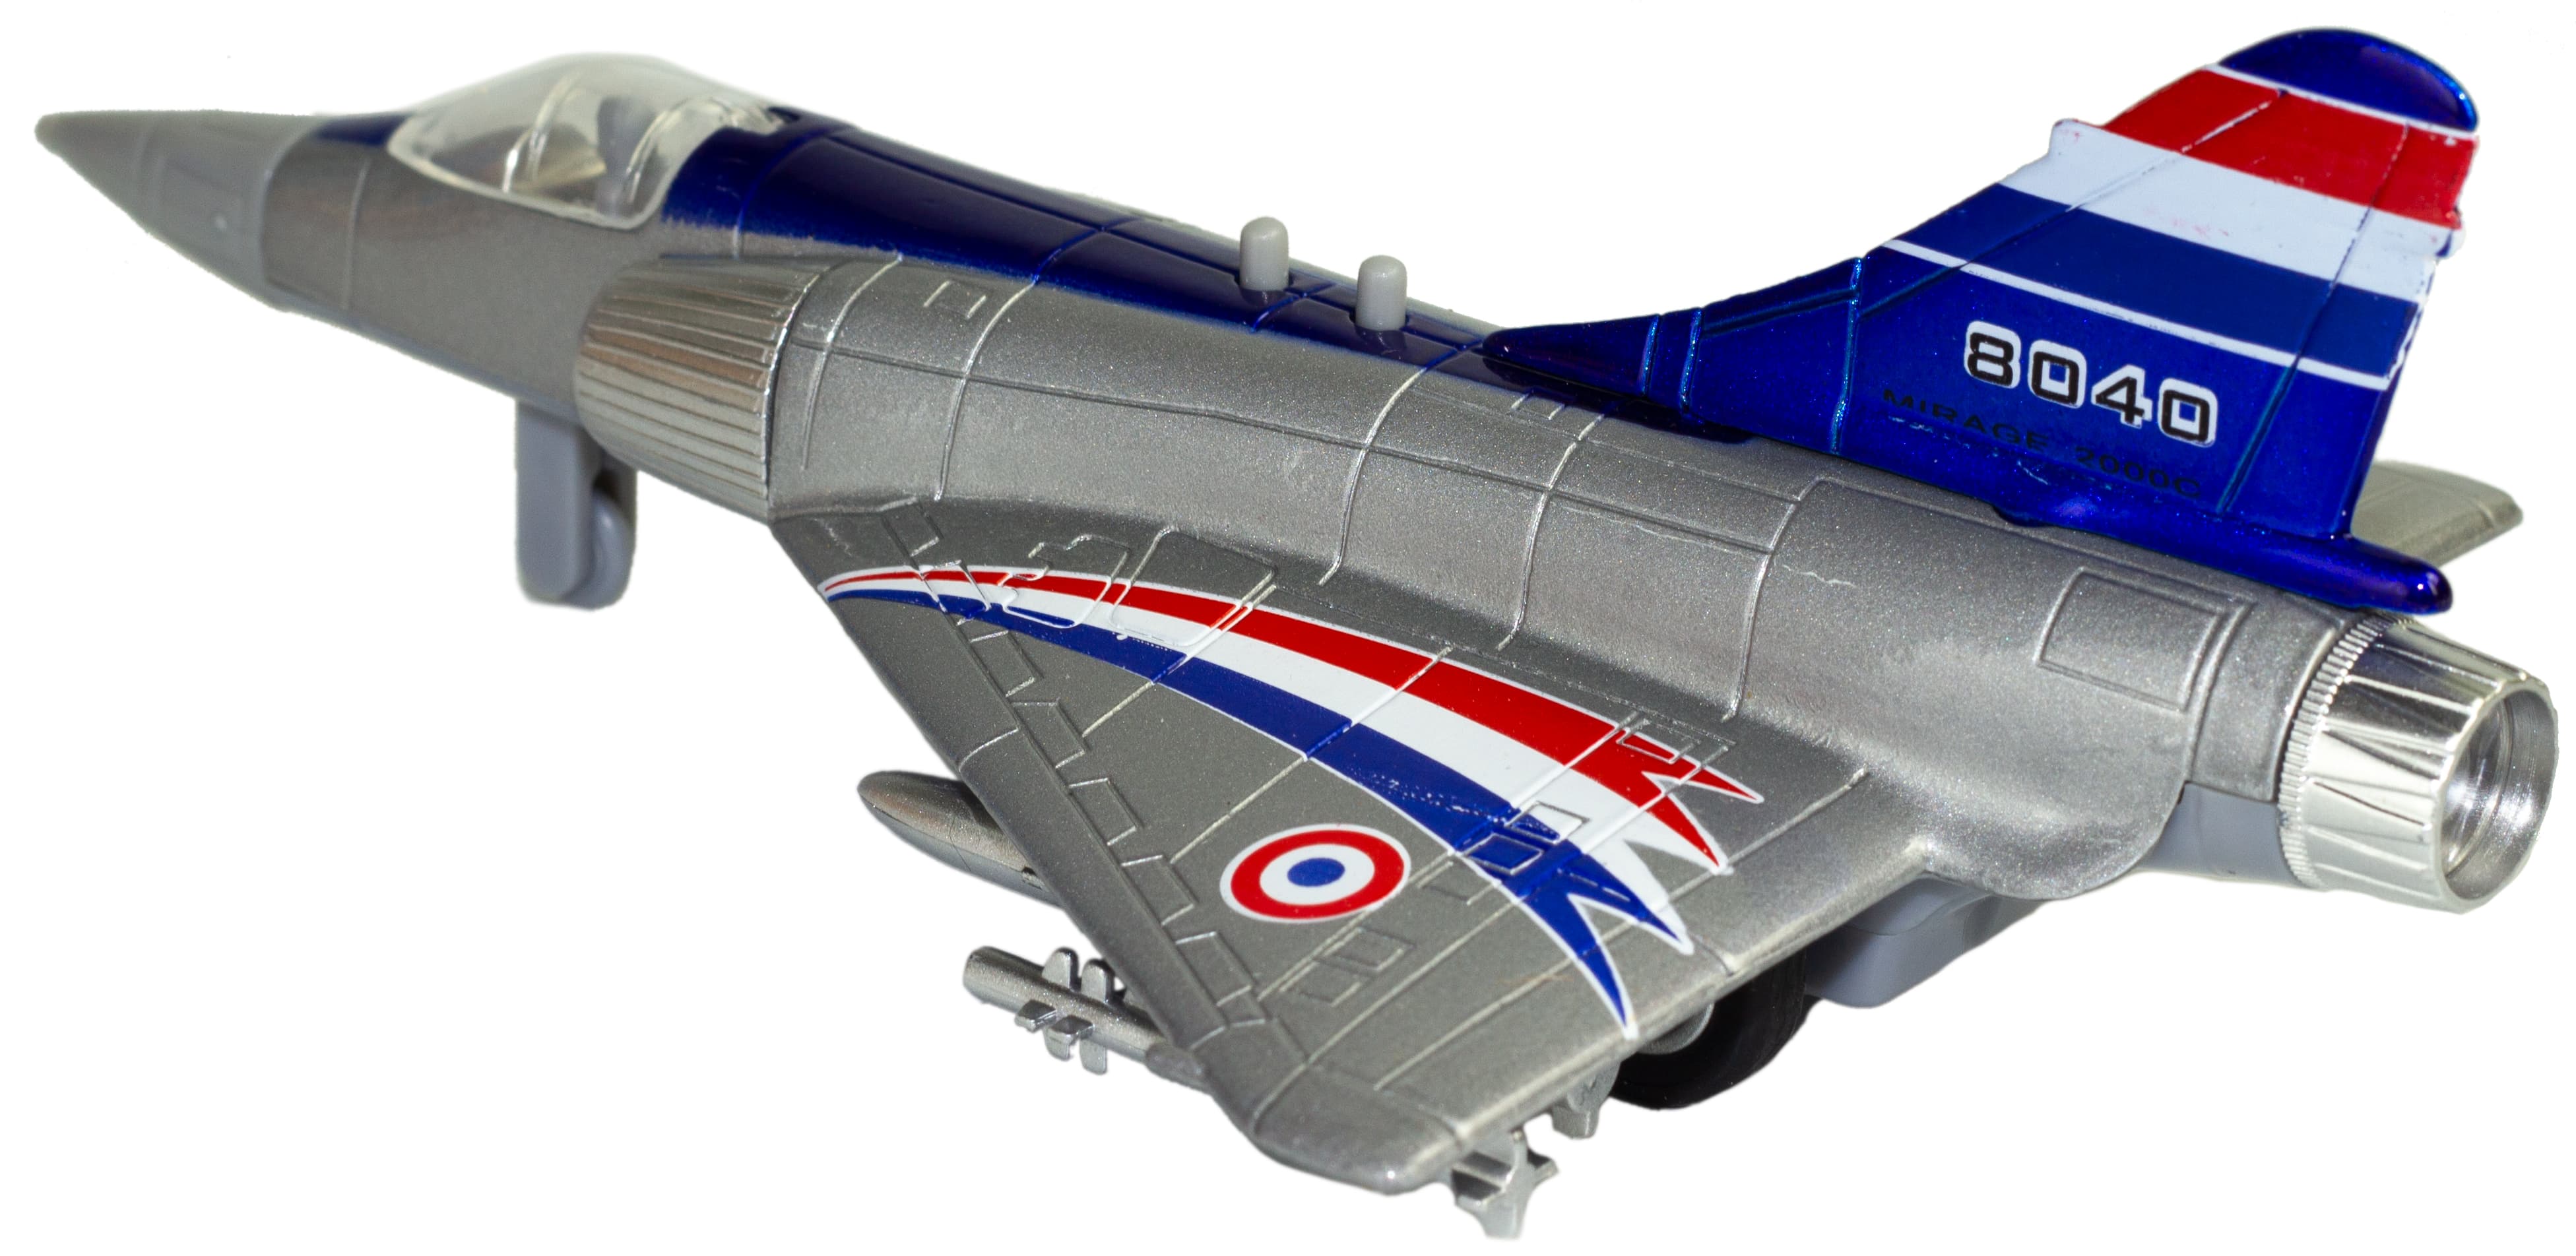 Металлический военный самолет «Sonic Mirage» 19.5 см. 8040, инерционный, свет, звук / Серебристо-синий